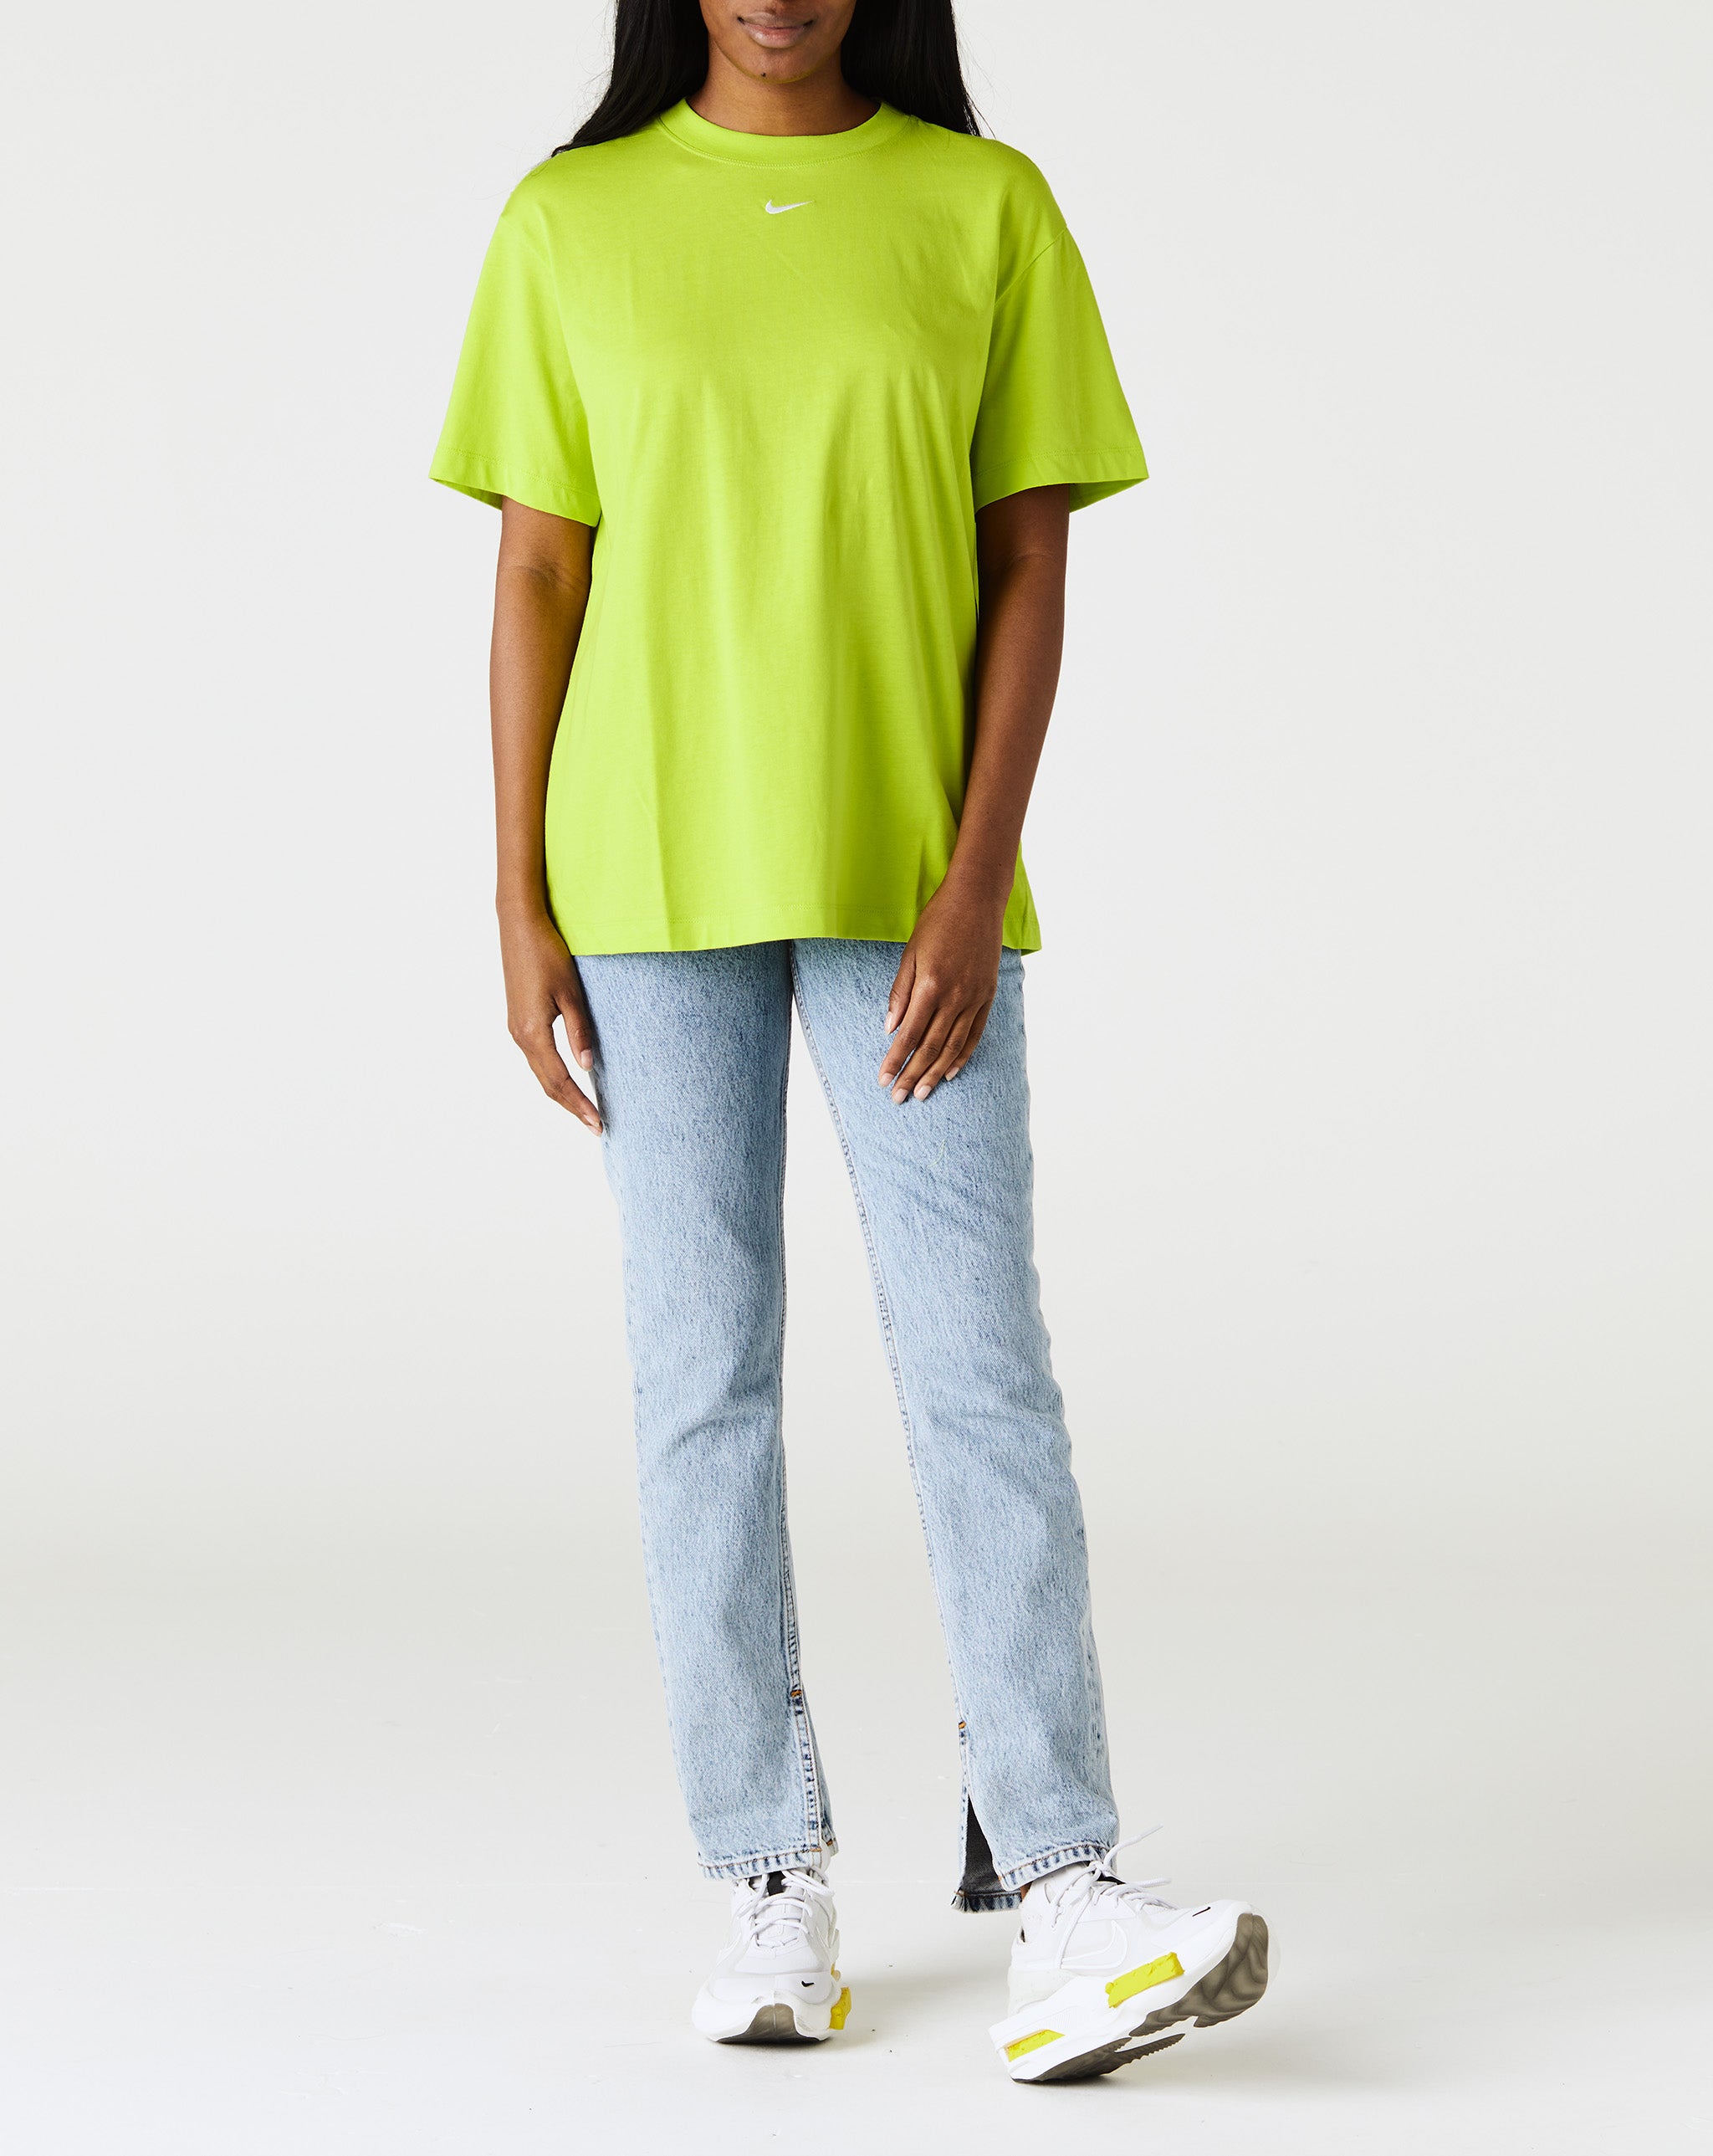 Nike Women's Essential T-Shirt  - Cheap Urlfreeze Jordan outlet